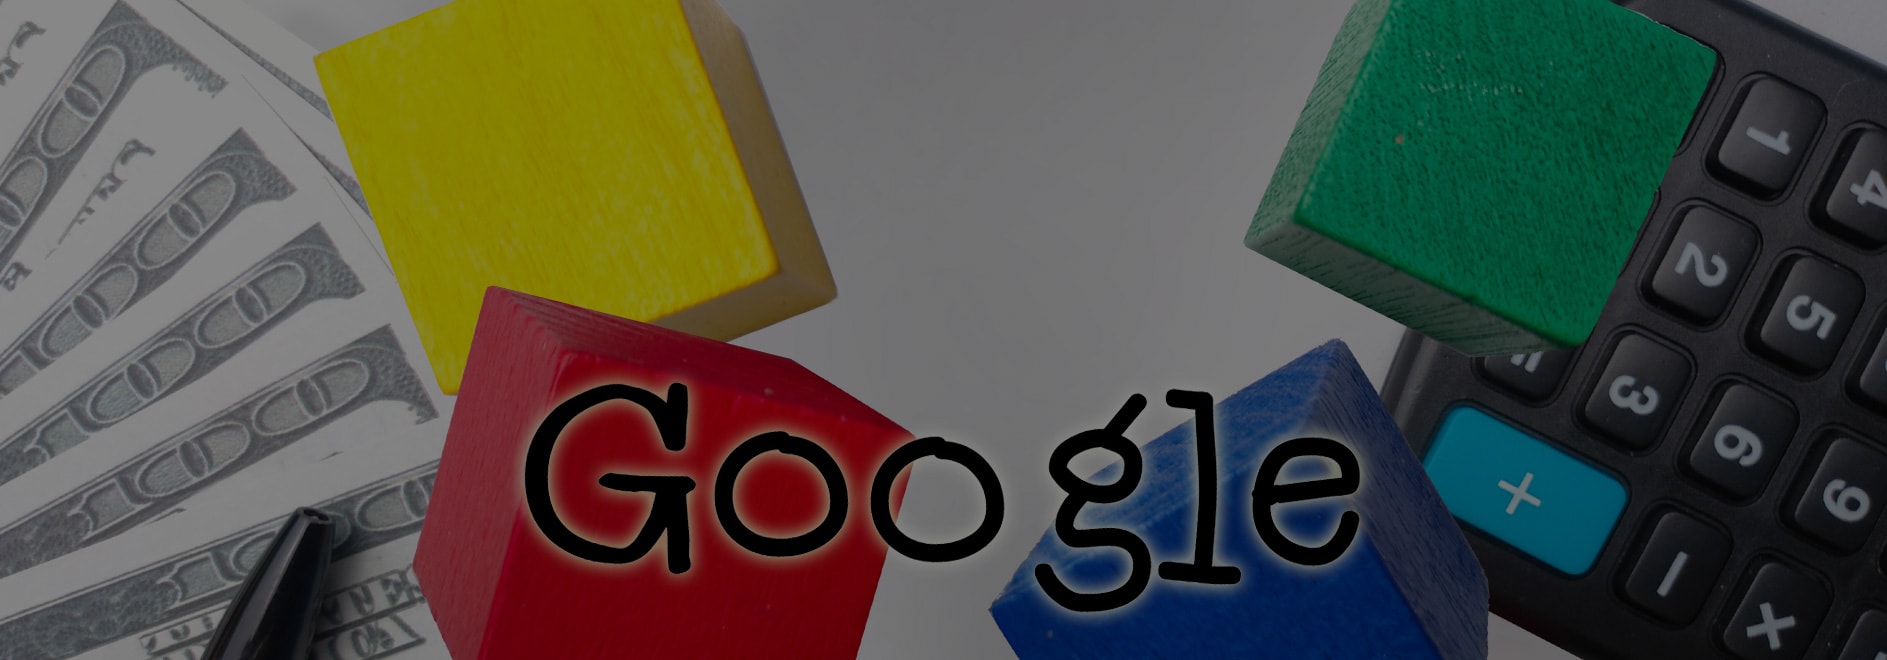 Google SEO Articles